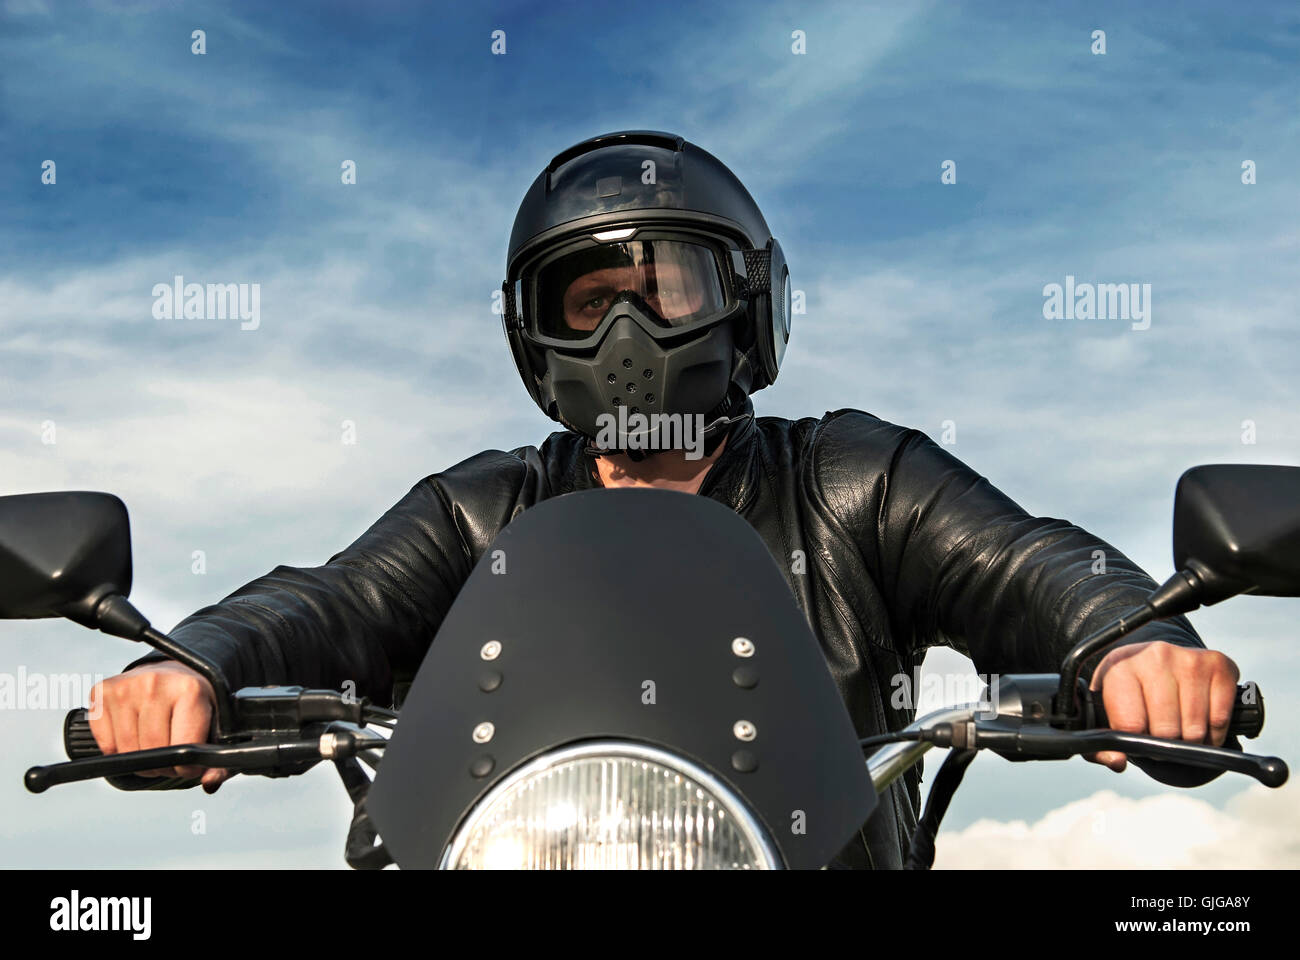 Motocycliste Motorbiker assis sur moto avec casque noir veste en cuir pare-soleil Ciel bleu nuages blancs les mains sur les poignées Banque D'Images